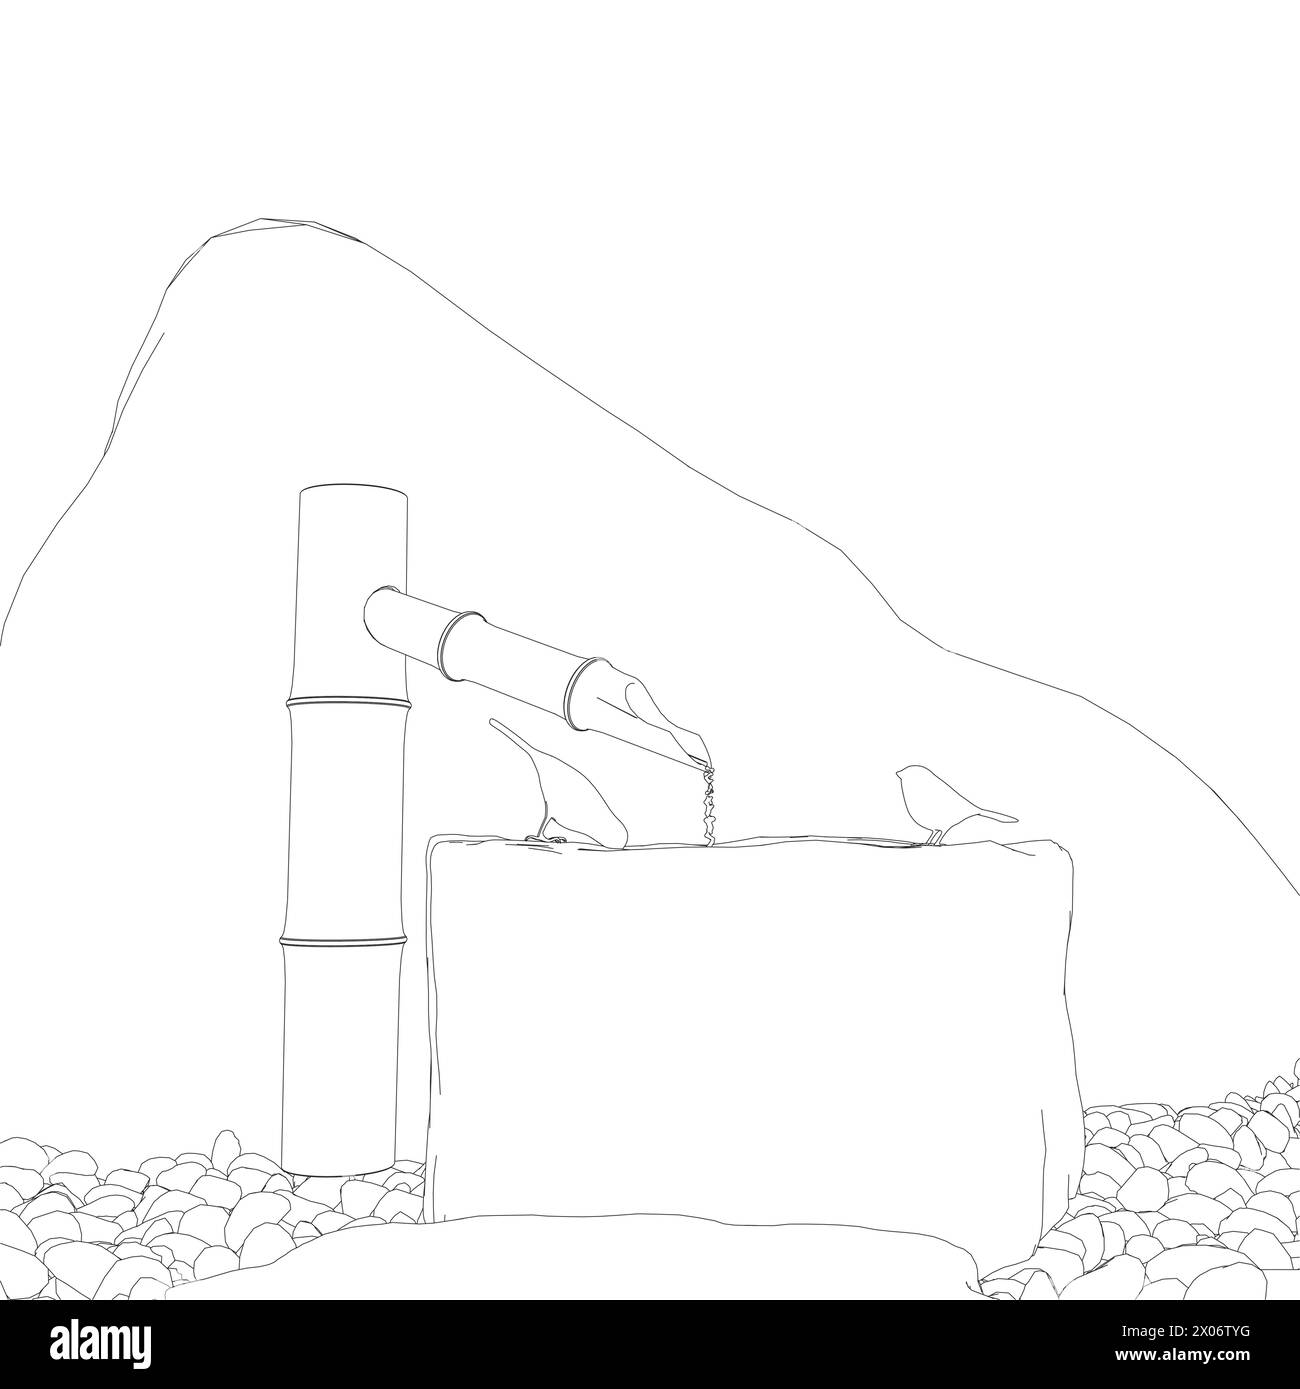 Contorno di due uccelli seduti su un pozzo e che bevono acqua da linee nere isolate su uno sfondo bianco. 3D. Illustrazione vettoriale. Illustrazione Vettoriale